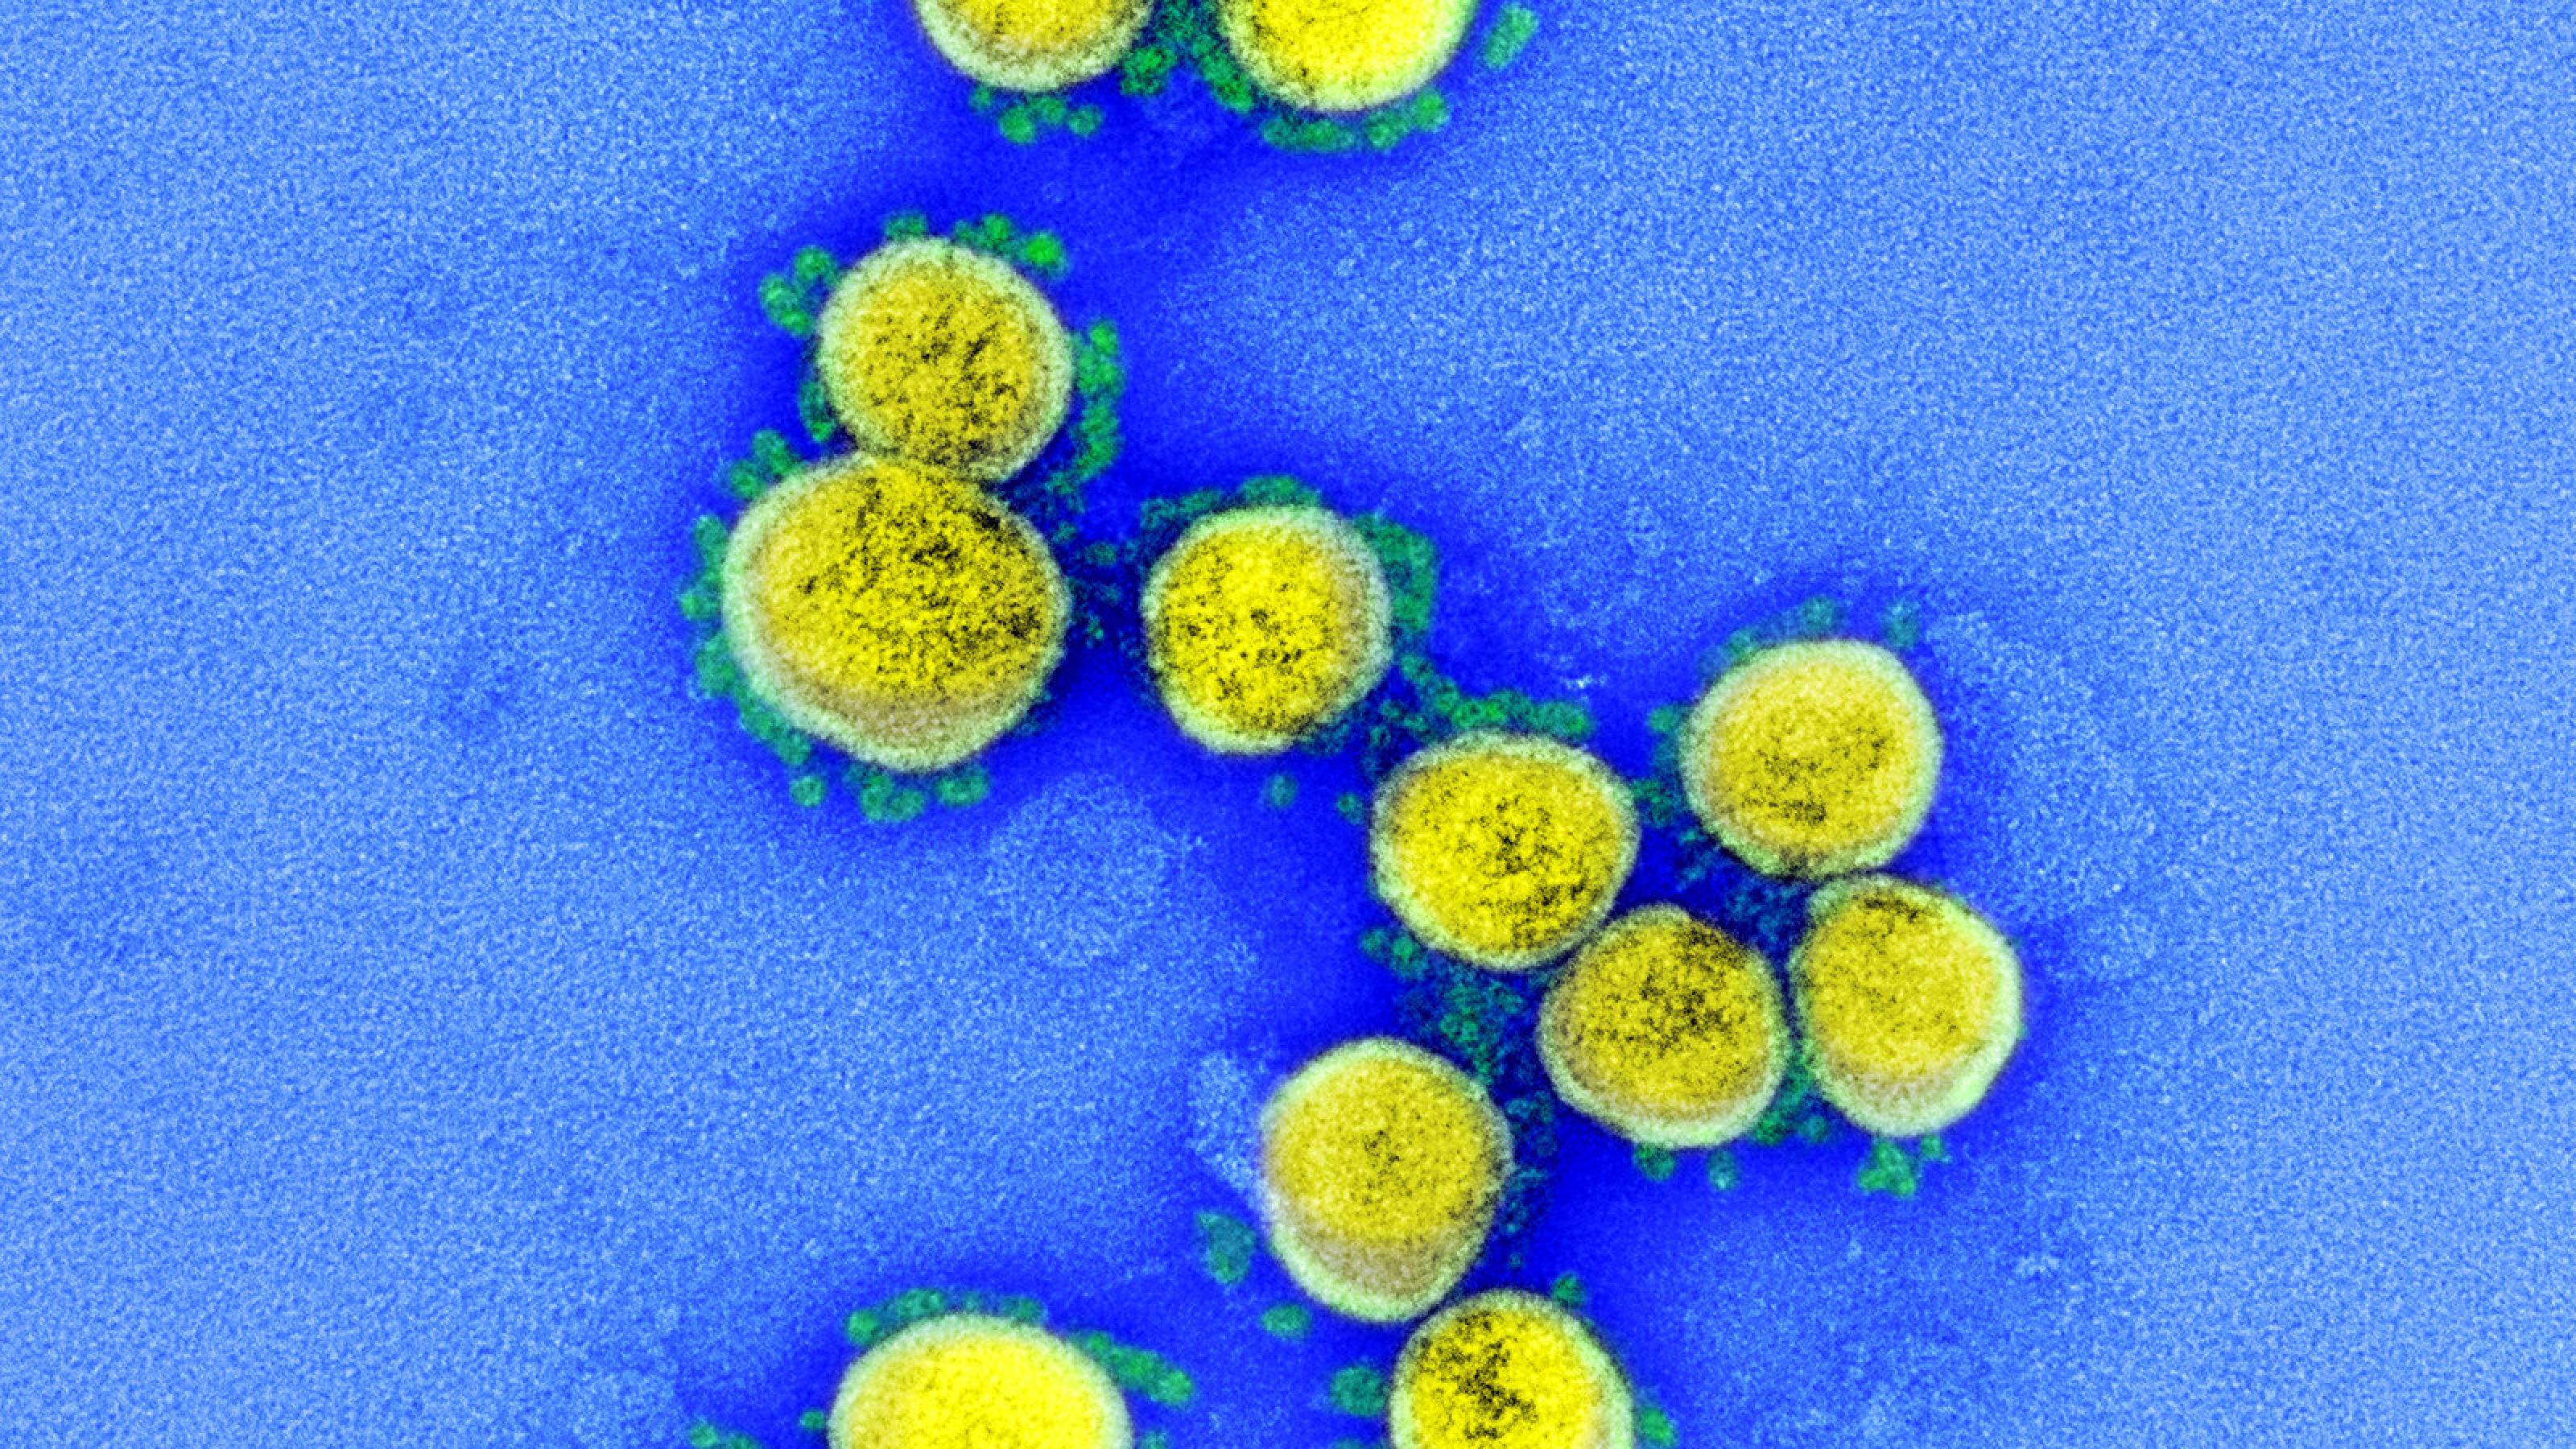 Das Foto zeigt eine elektronenmikroskopische Aufnahme des Coronavirus Sars-CoV-2. Das Virus ist gelb, seine Stacheln grün angefärbt.